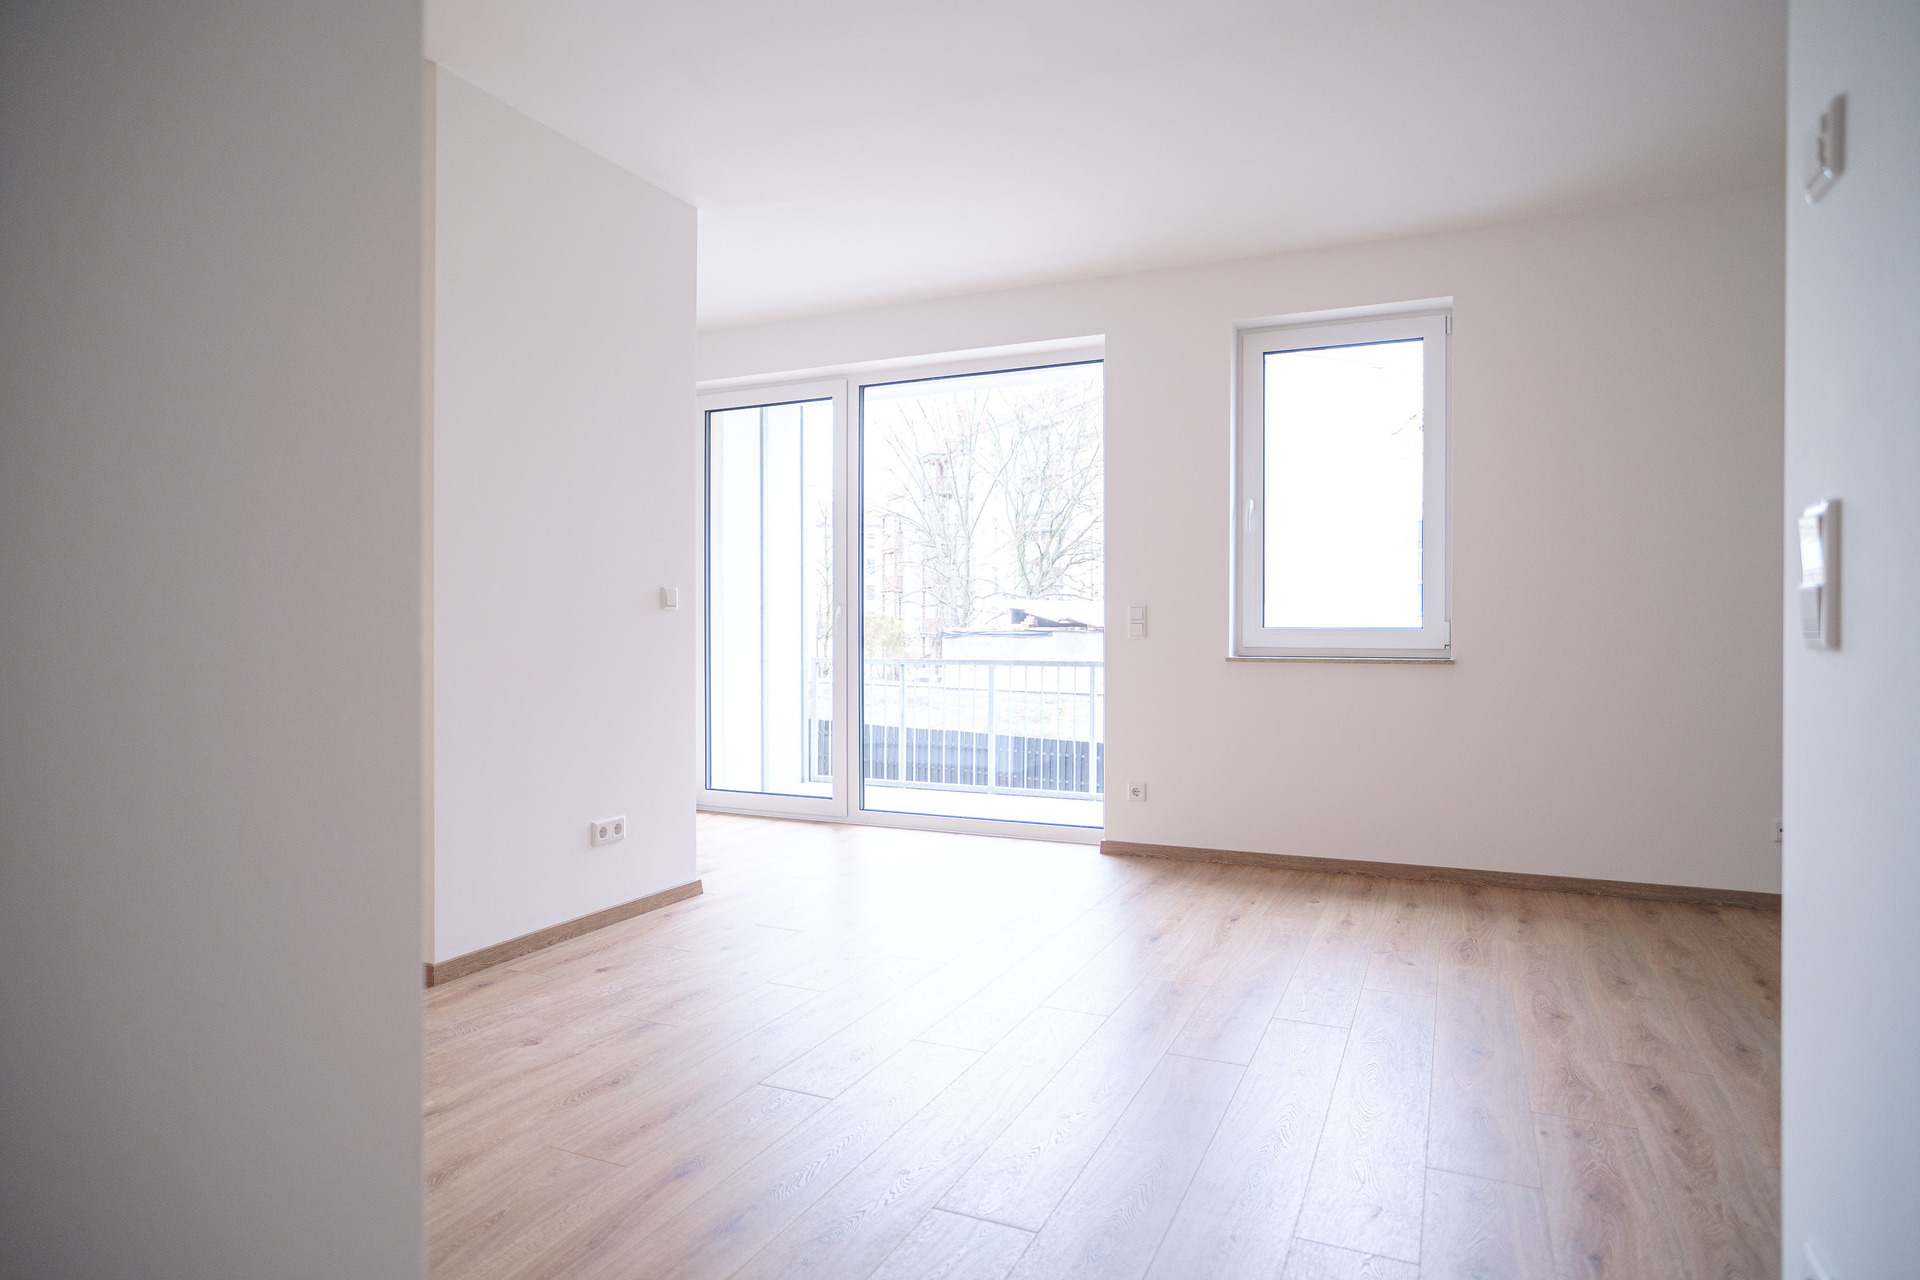 Zentrumsnah wohnen: 3-Zimmer-Wohnung mit Terrasse und EBK in zeitgemäßem Neubau, 04315 Leipzig, Etagenwohnung